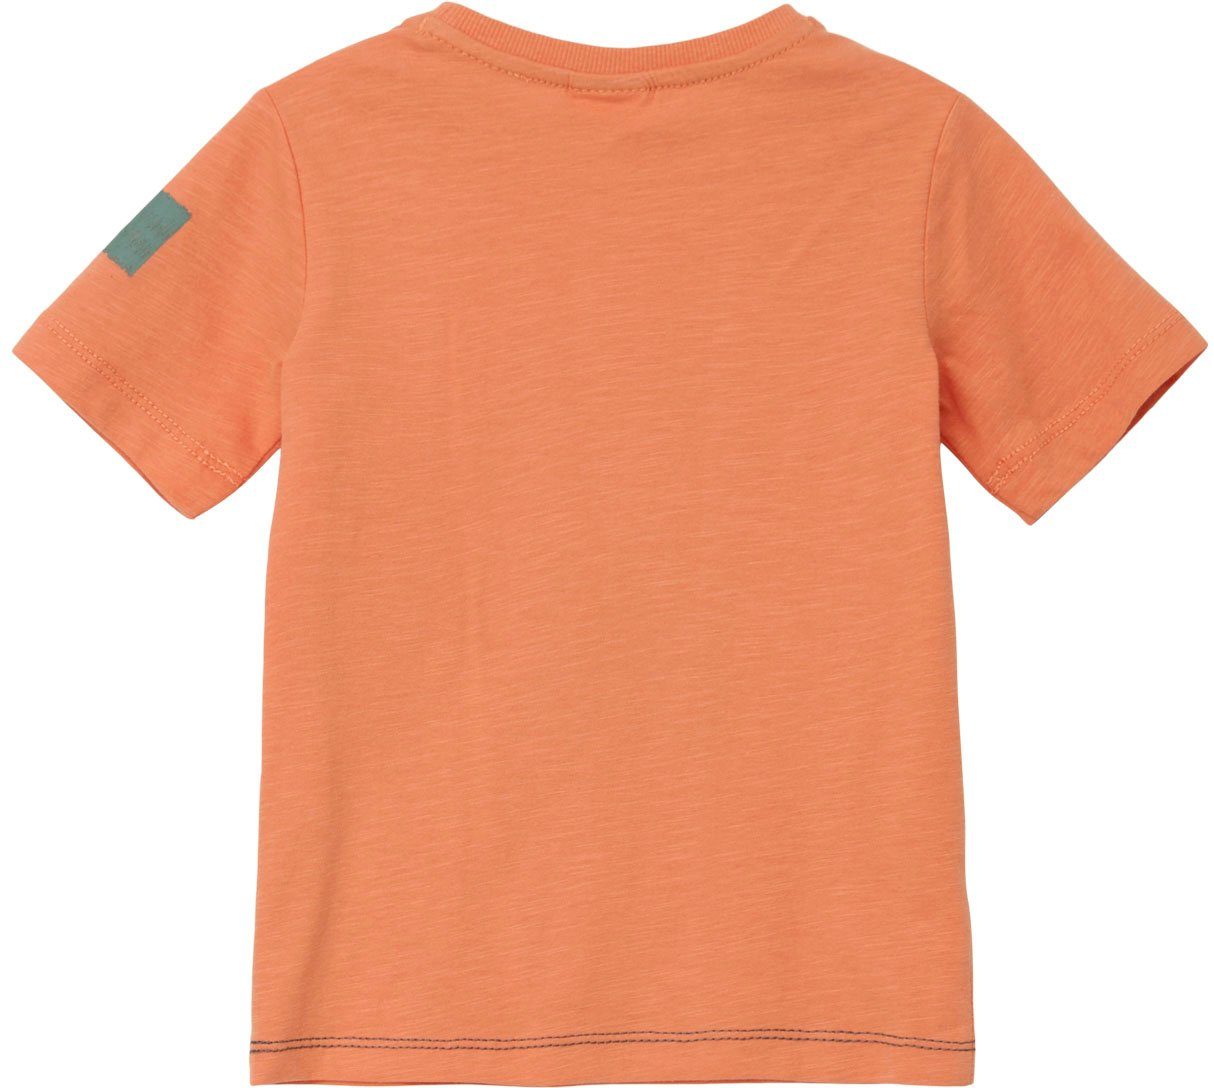 Junior Arm s.Oliver Stickereien am orange T-Shirt